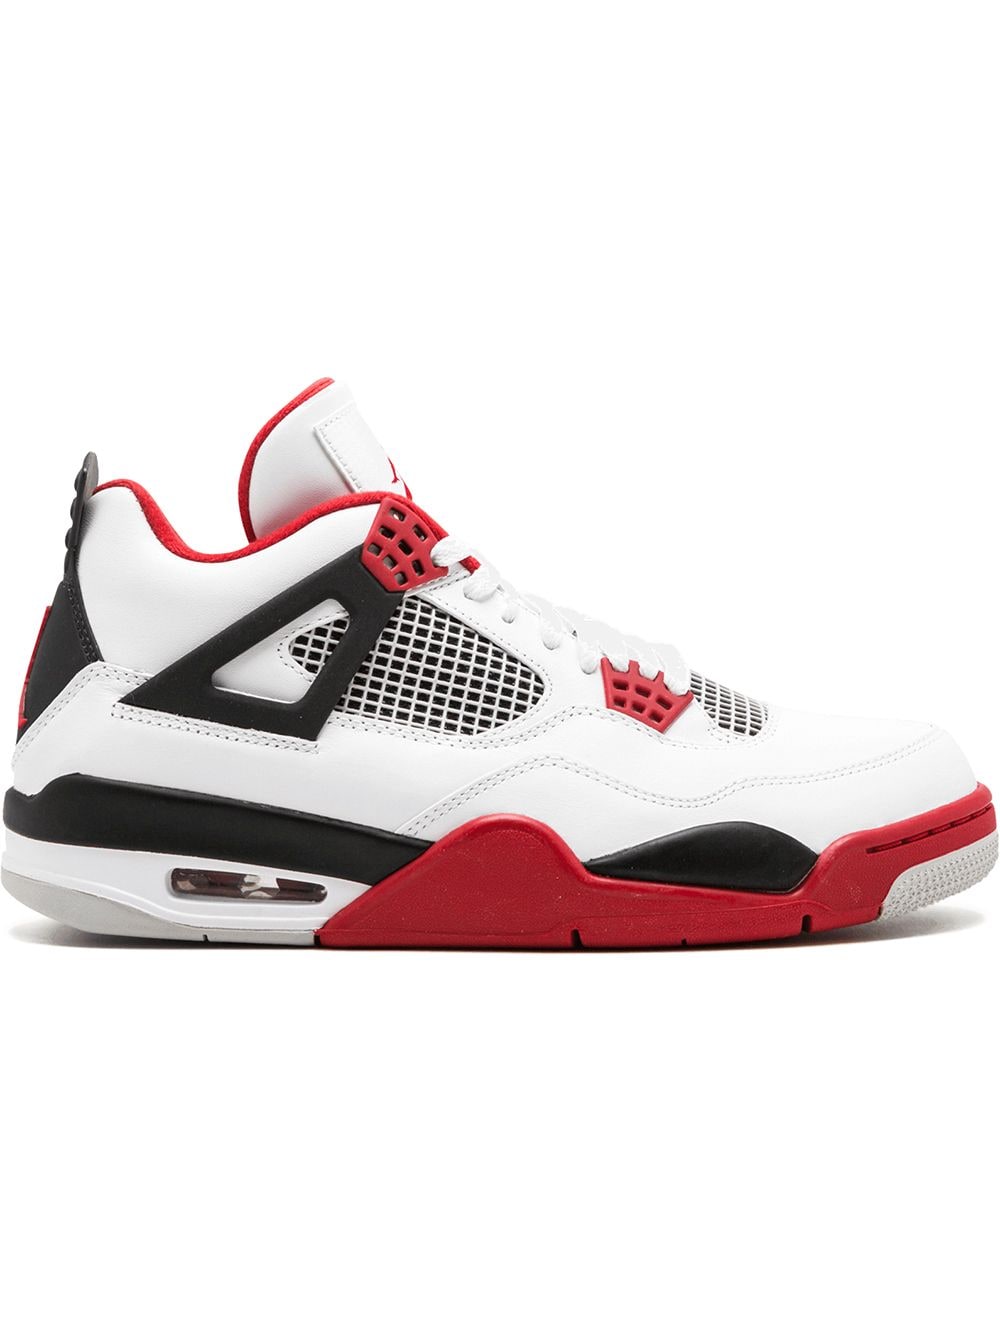 Jordan Air Jordan 4 Retro "Fire Red" sneakers - White